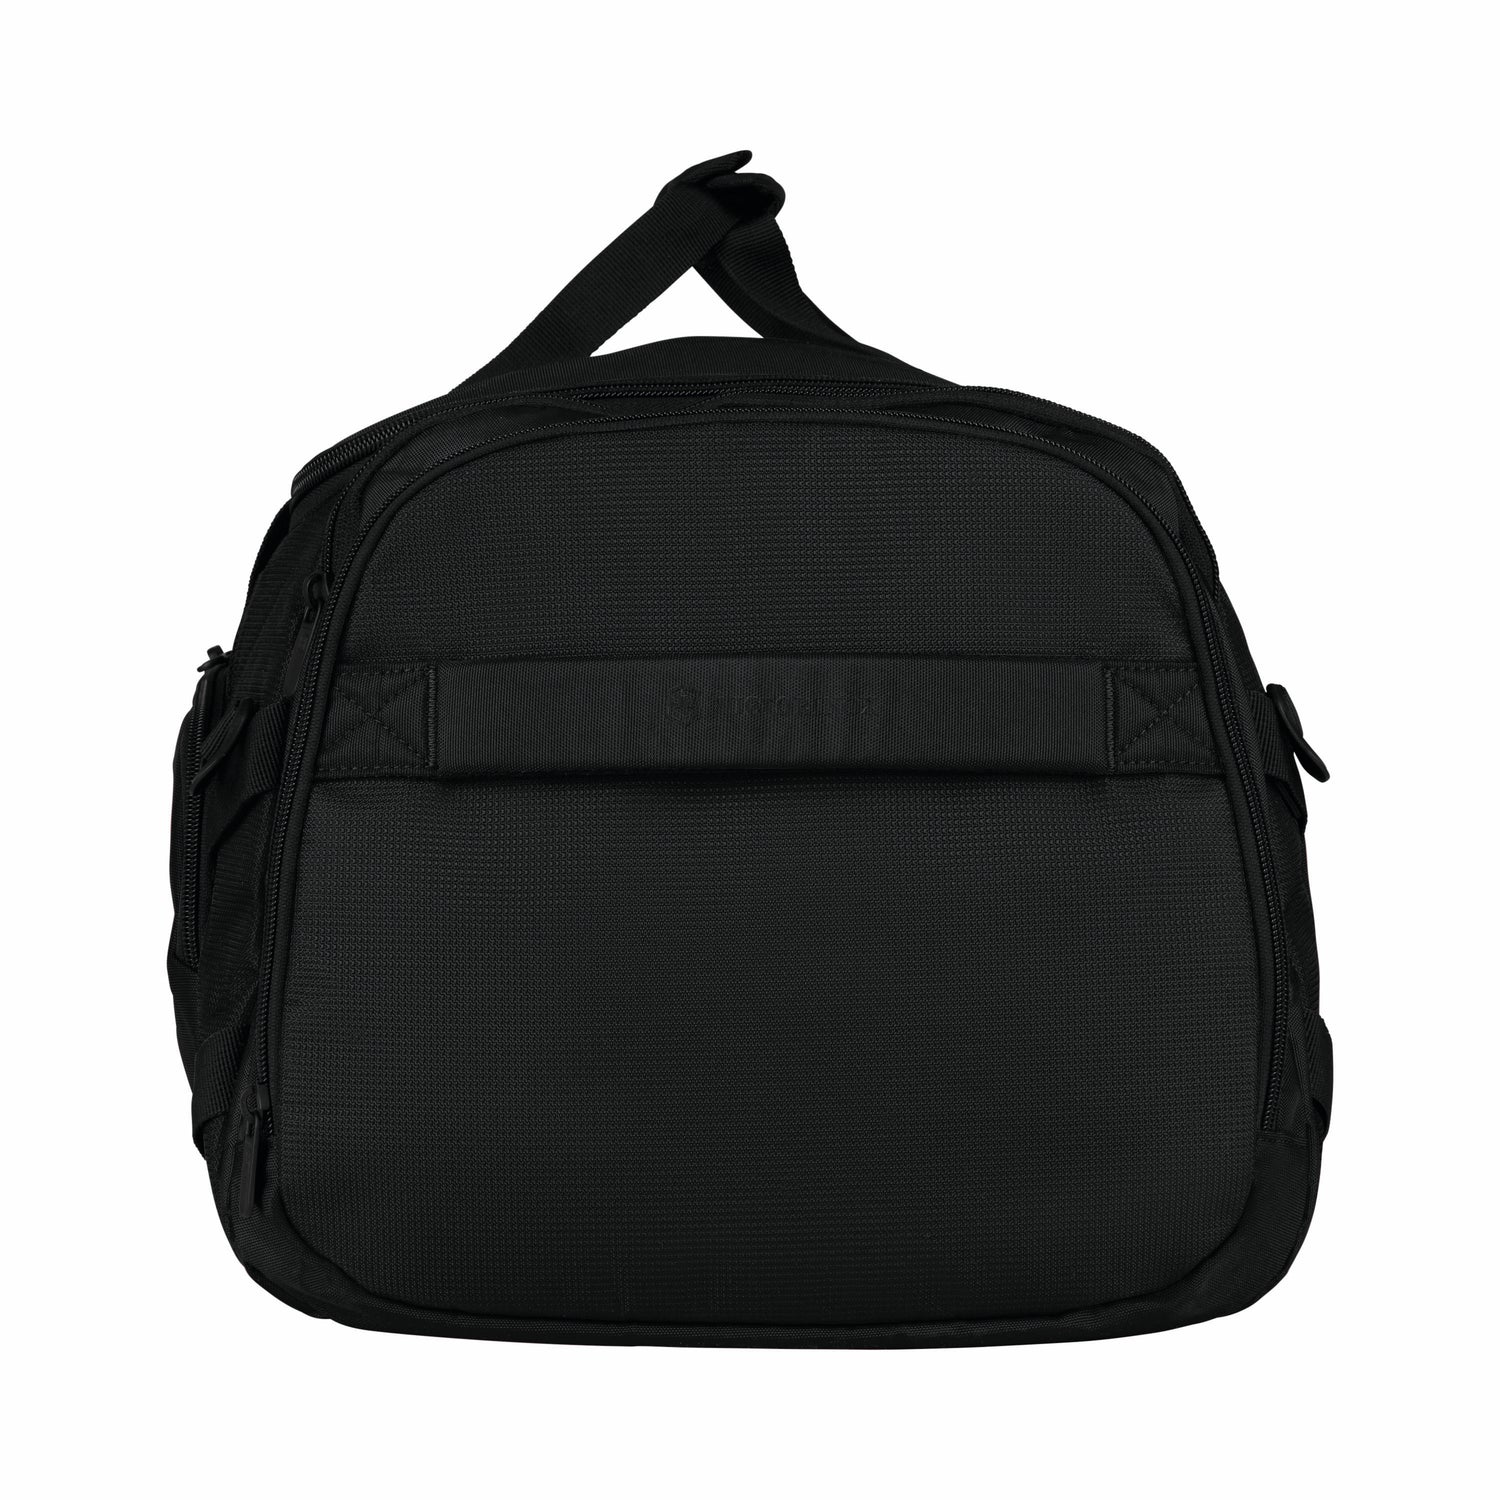 Sport EVO, 2-in-1 Backpack/Duffel, Black victorinox travel gear VTG 611422 Kunzi Shop 5